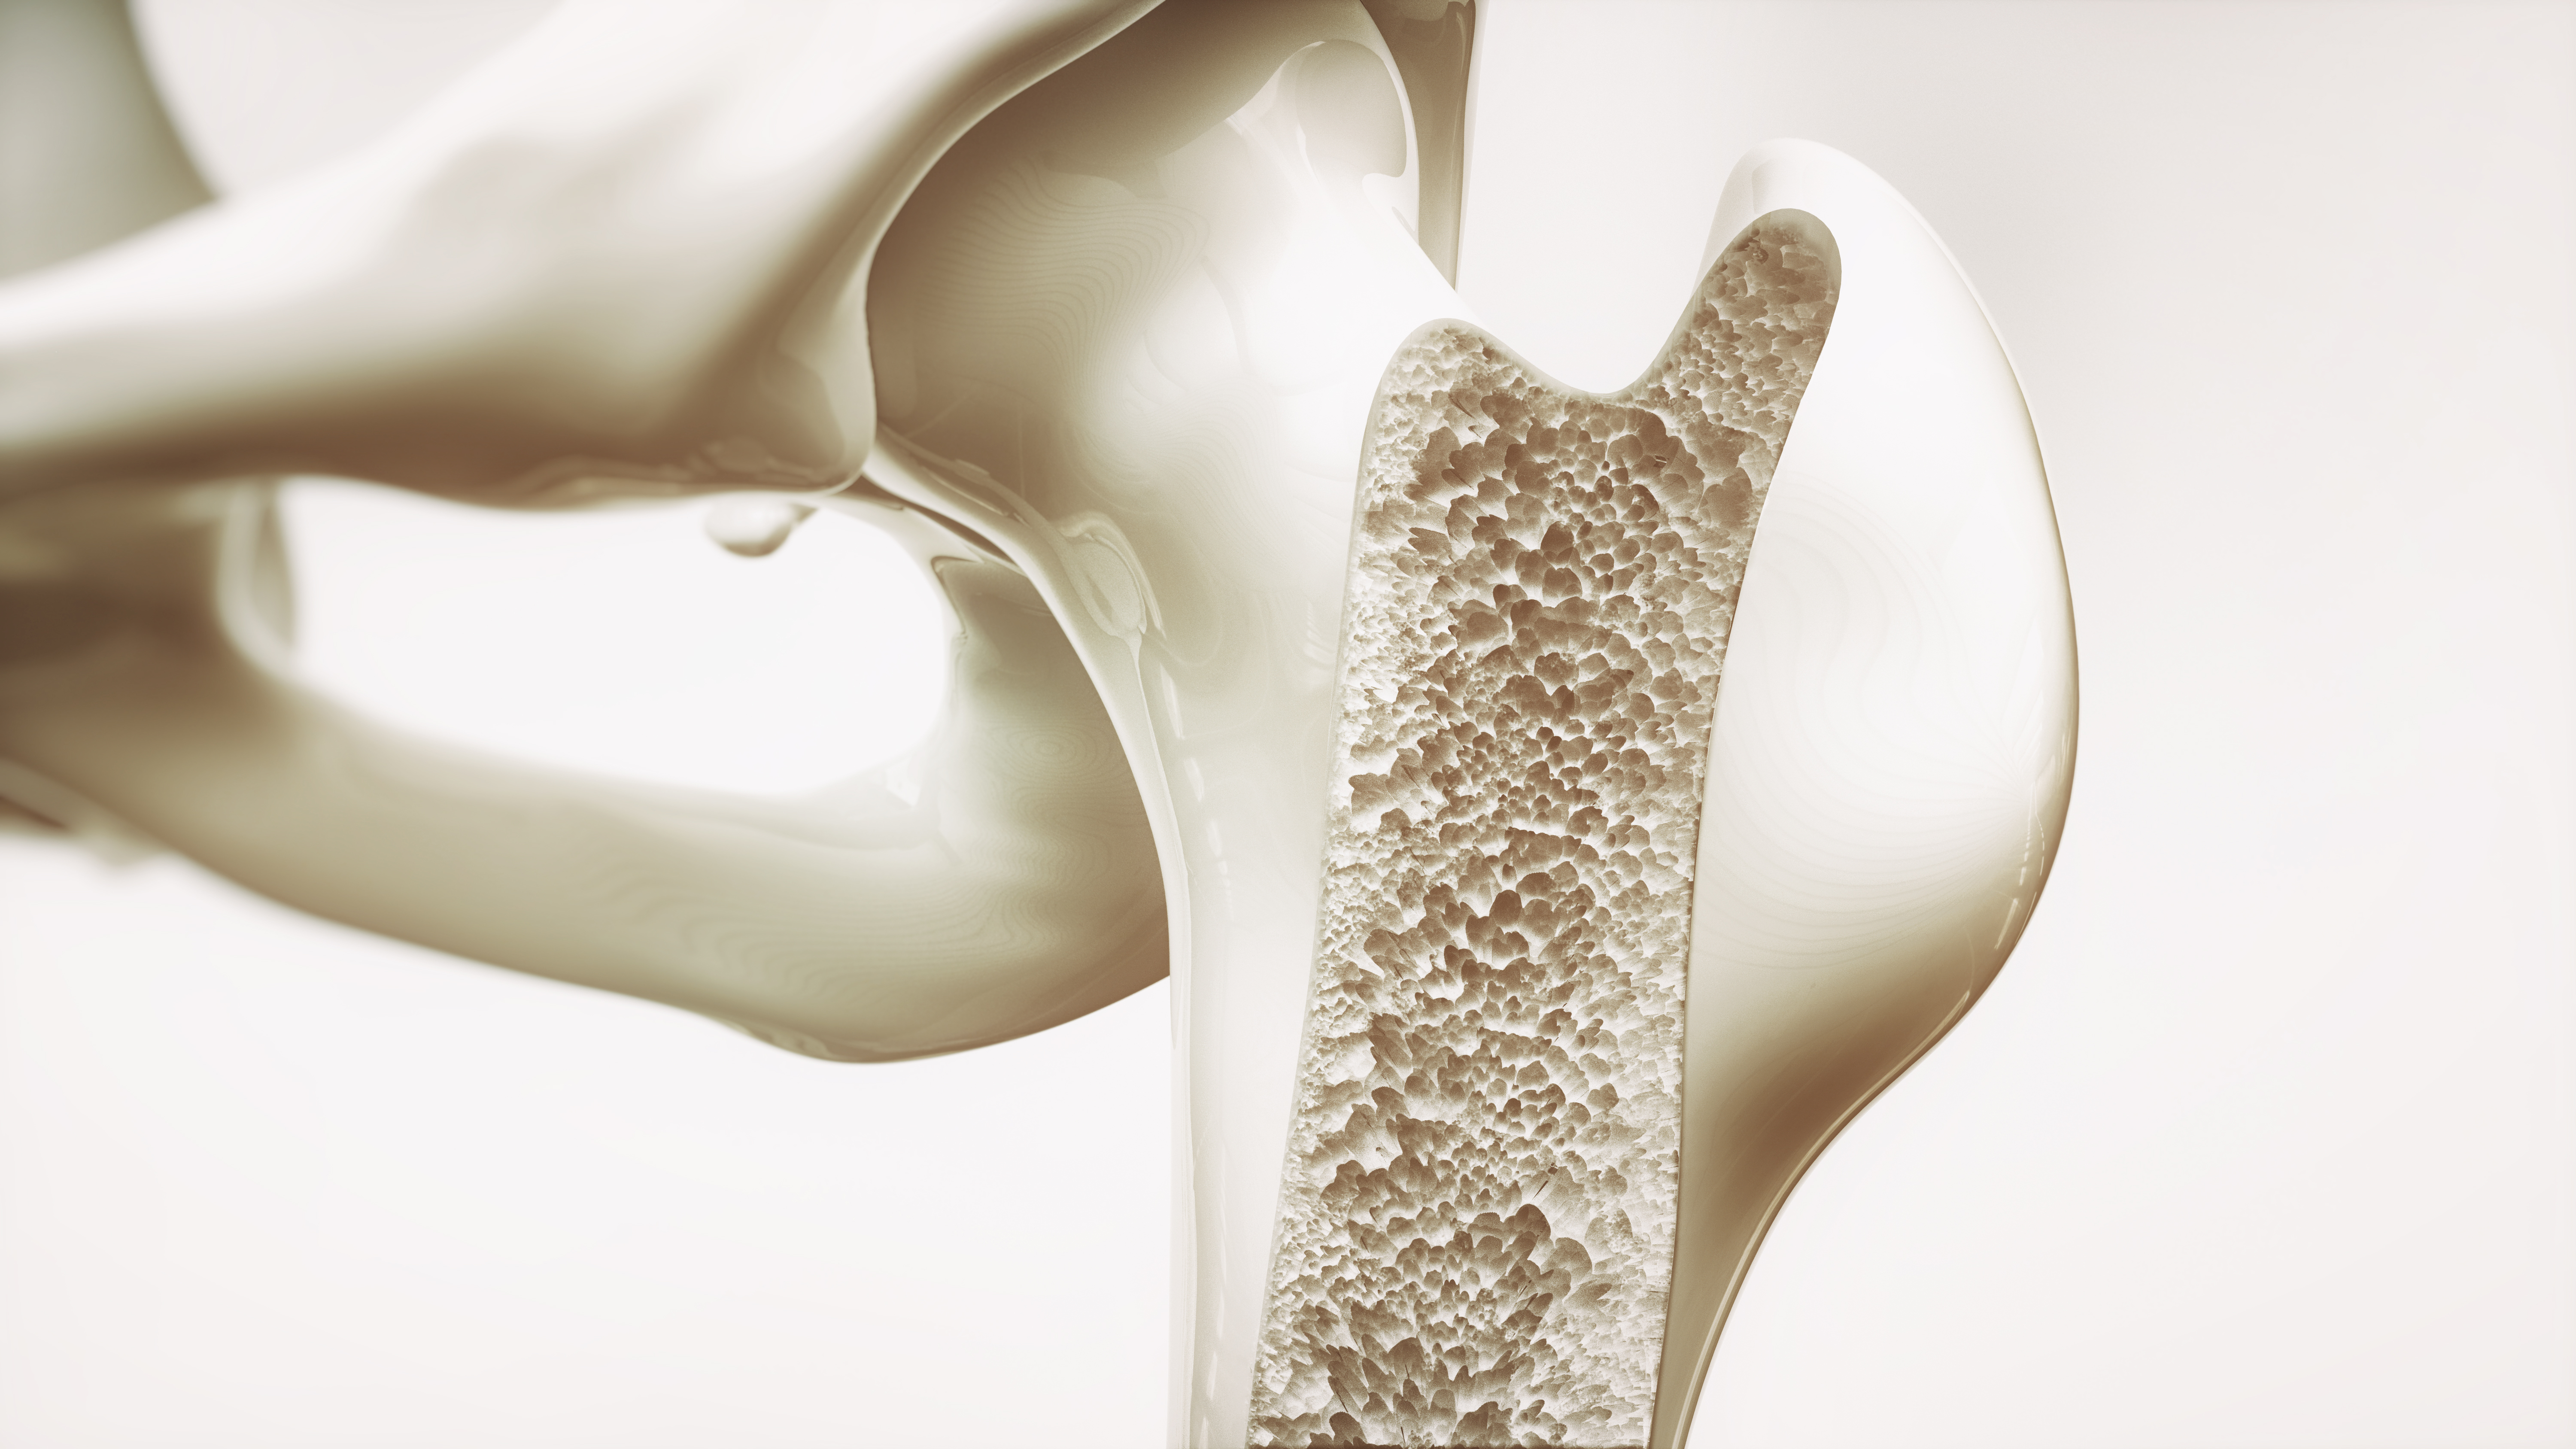 El sistema óseo necesita especial cuidado en la alimentación y actividad física. (Foto Prensa Libre: Shutterstock)